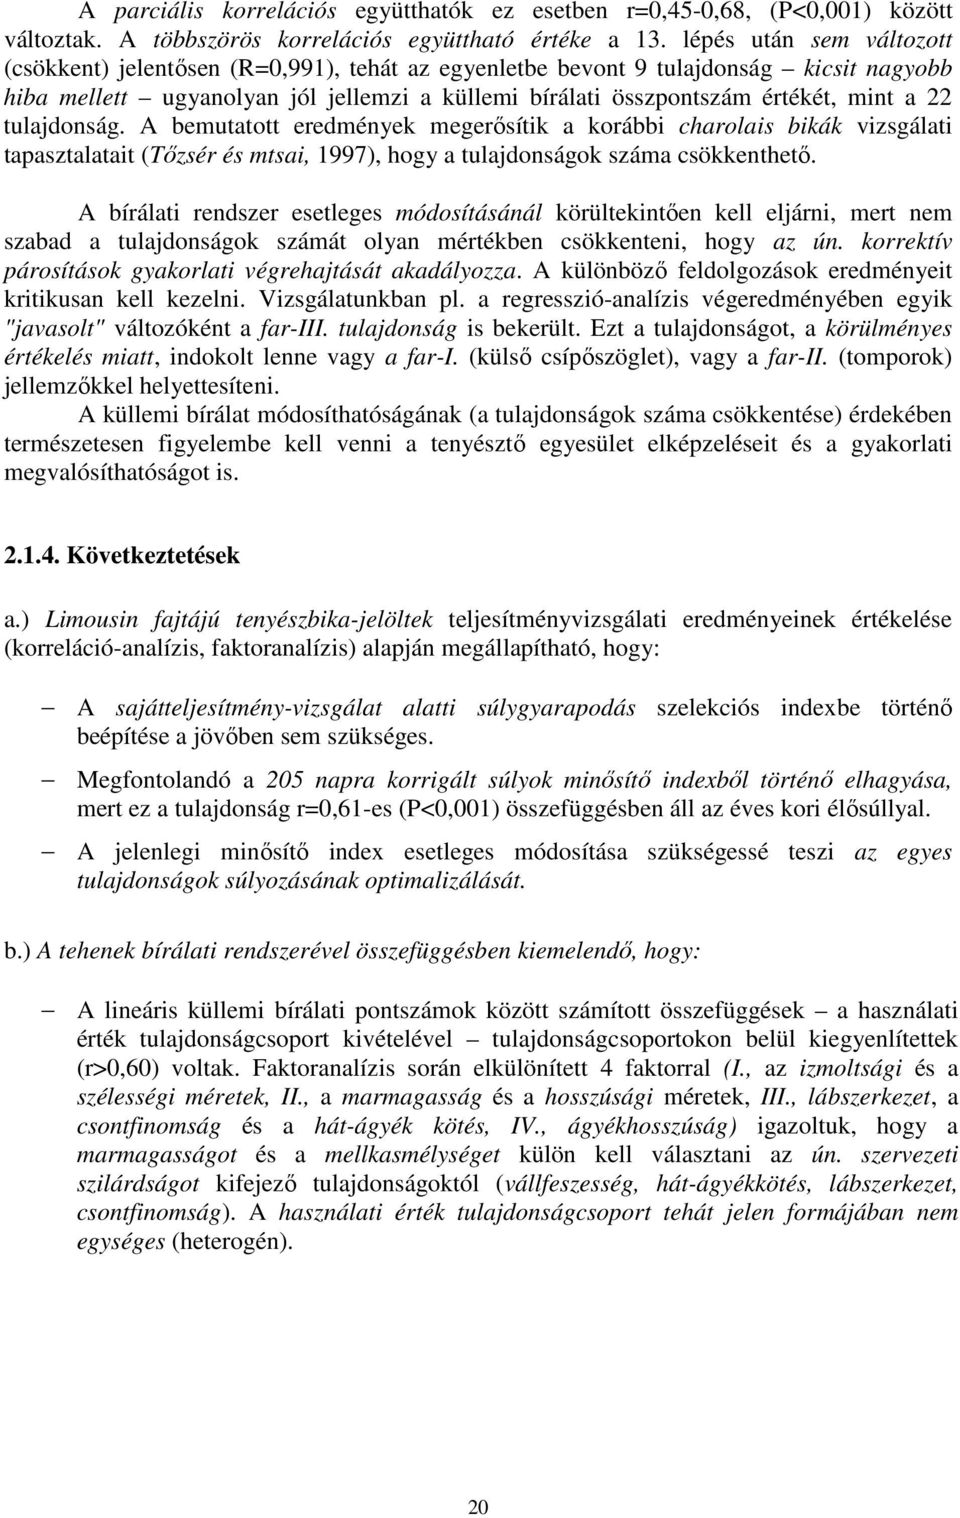 22 tulajdonság. A bemutatott eredmények megerısítik a korábbi charolais bikák vizsgálati tapasztalatait (Tızsér és mtsai, 1997), hogy a tulajdonságok száma csökkenthetı.